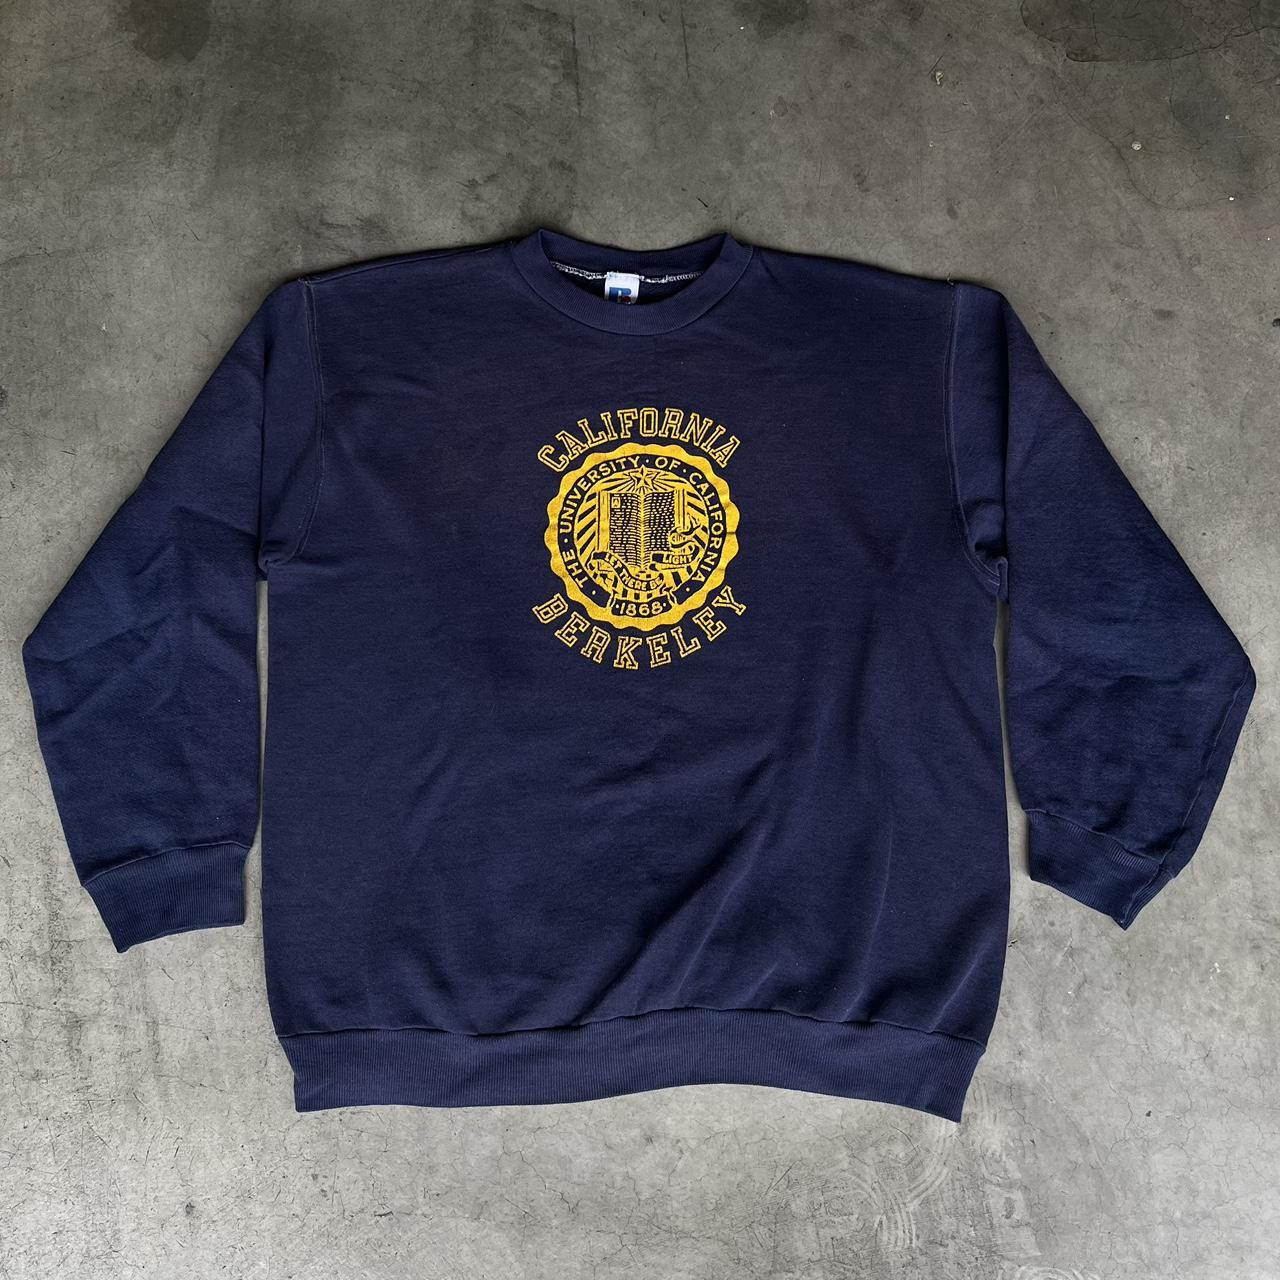 Vintage 80s UC Berkeley Sweatshirt University of... - Depop